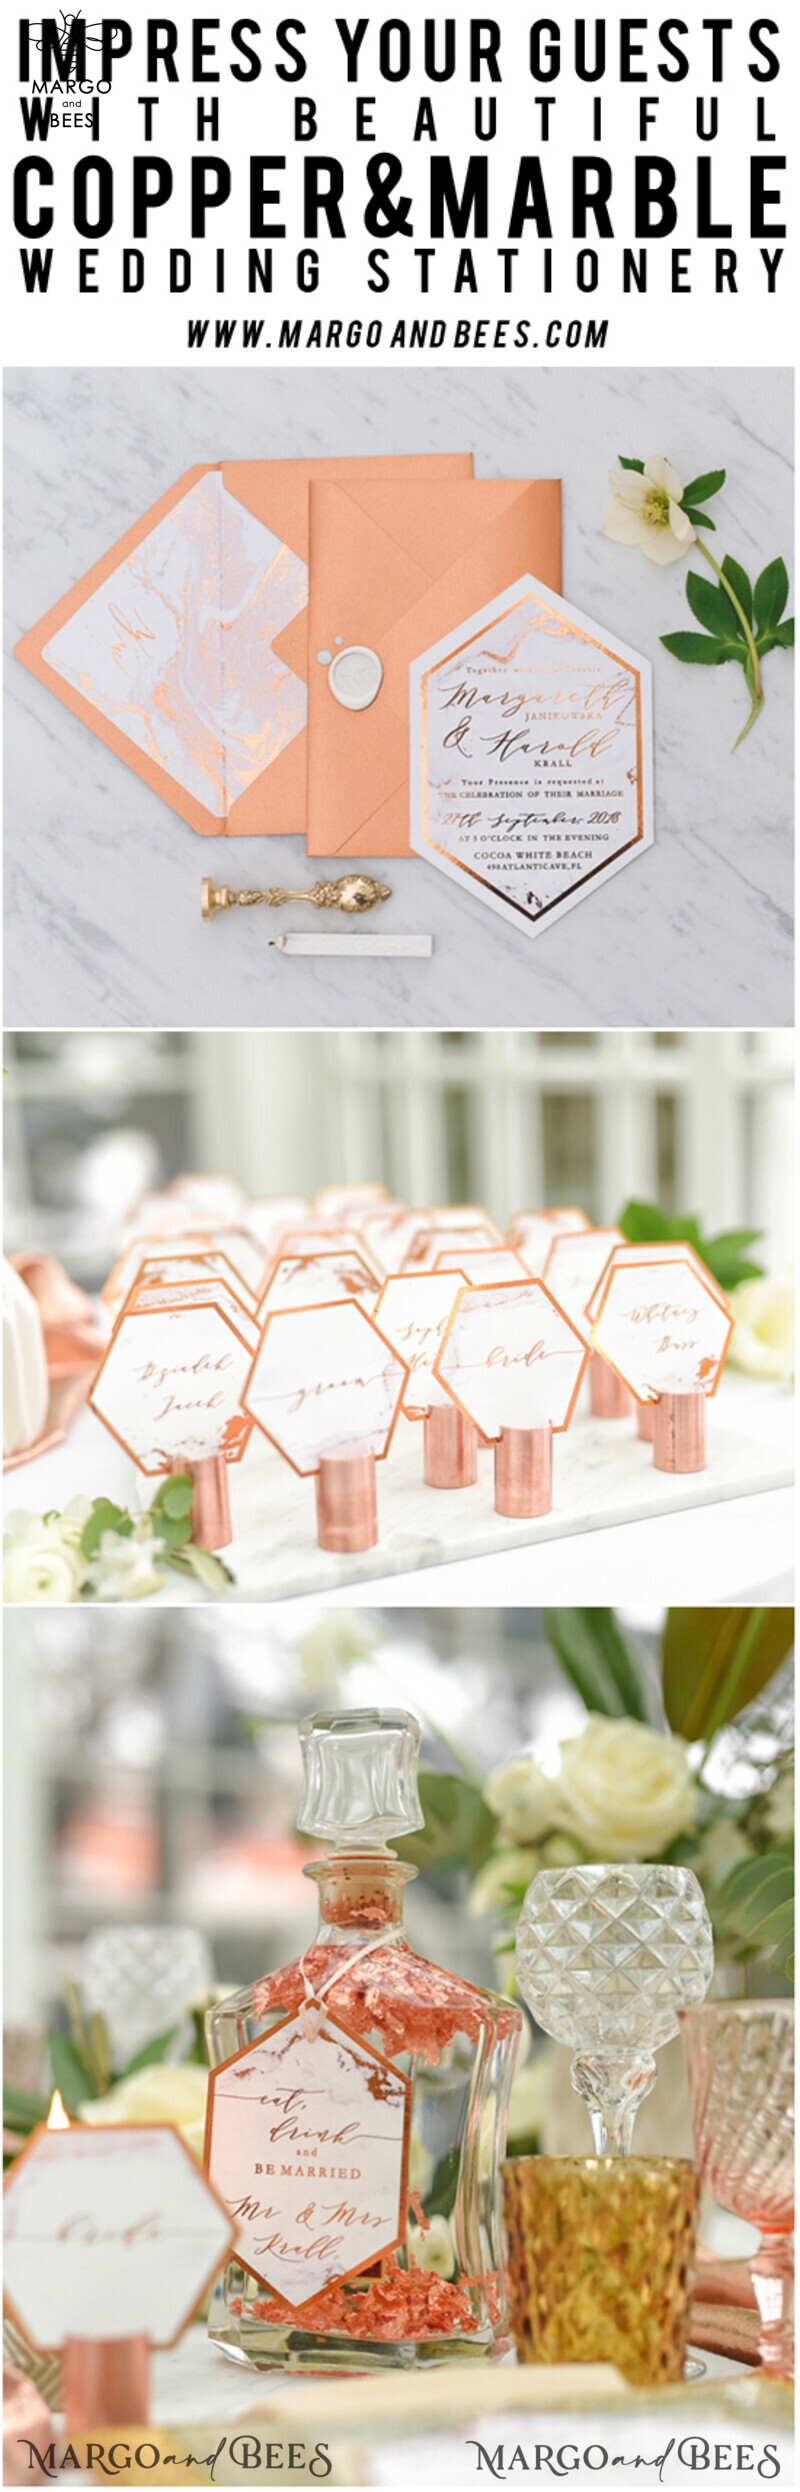 Luxury Copper Marble Wedding Invitations: Glamour Glitter, Elegant Geometric, and Bespoke Orange Wedding Stationery-8